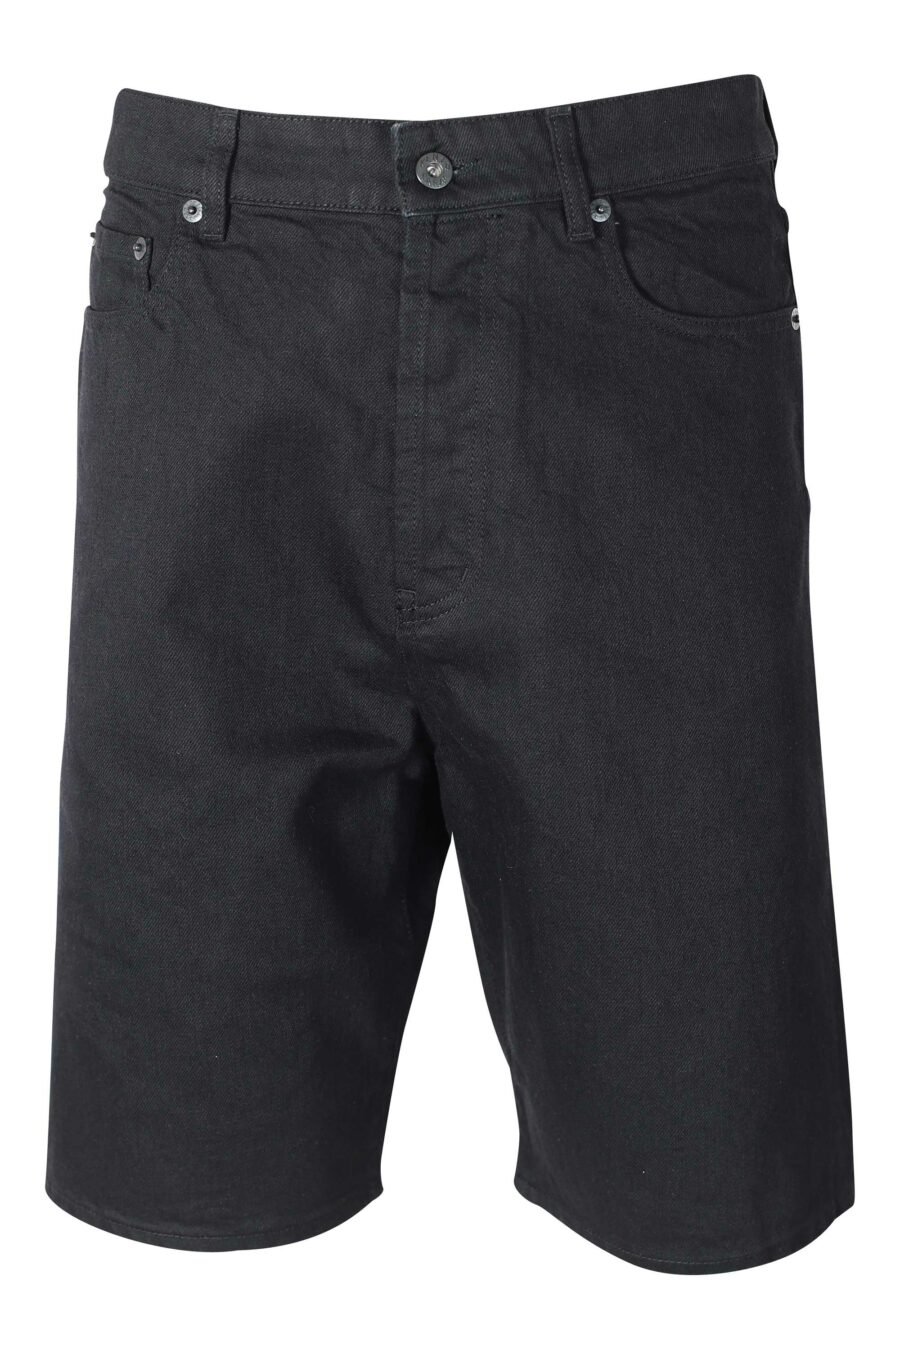 Pantalón vaquero negro corto con minilogo - IMG 9603